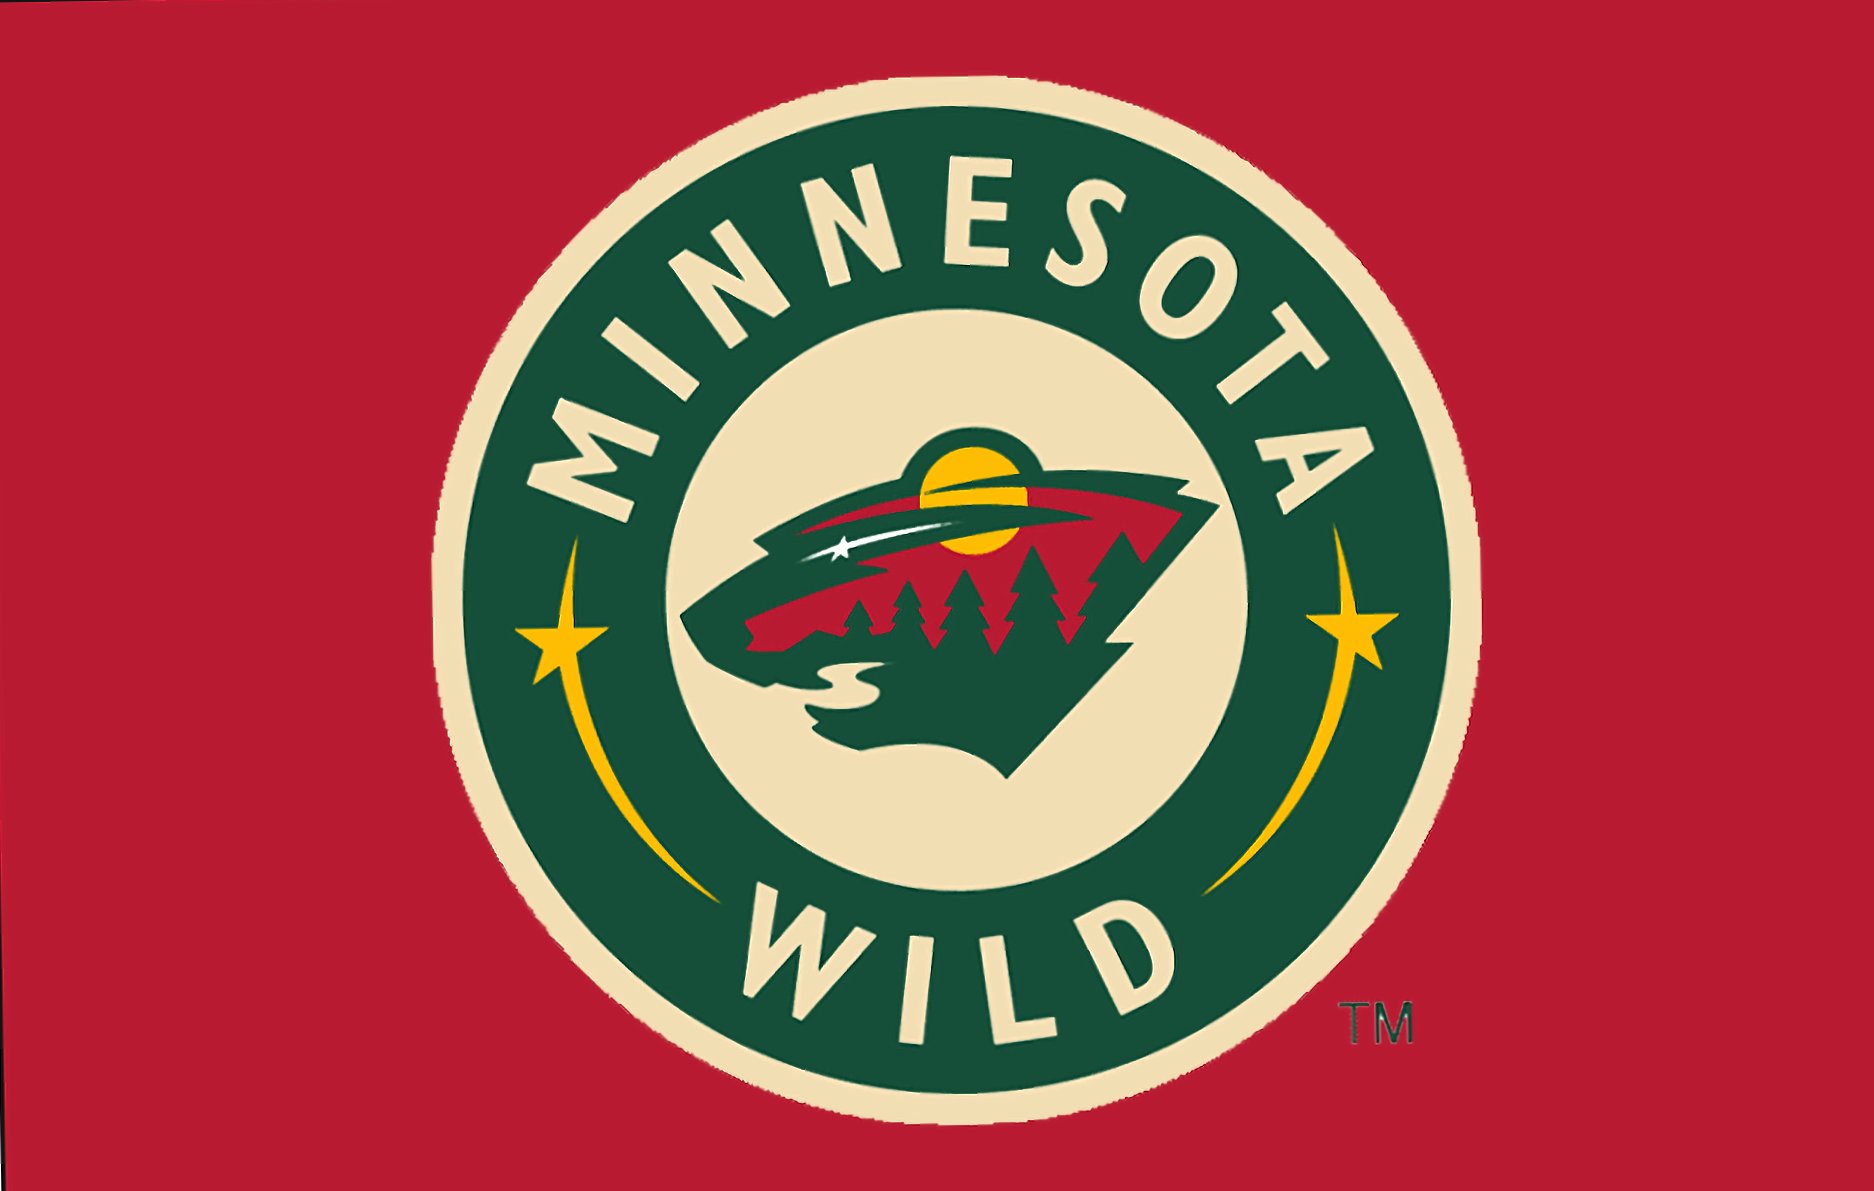 Minnesota Wild at 1024 x 1024 iPad size wallpapers HD quality